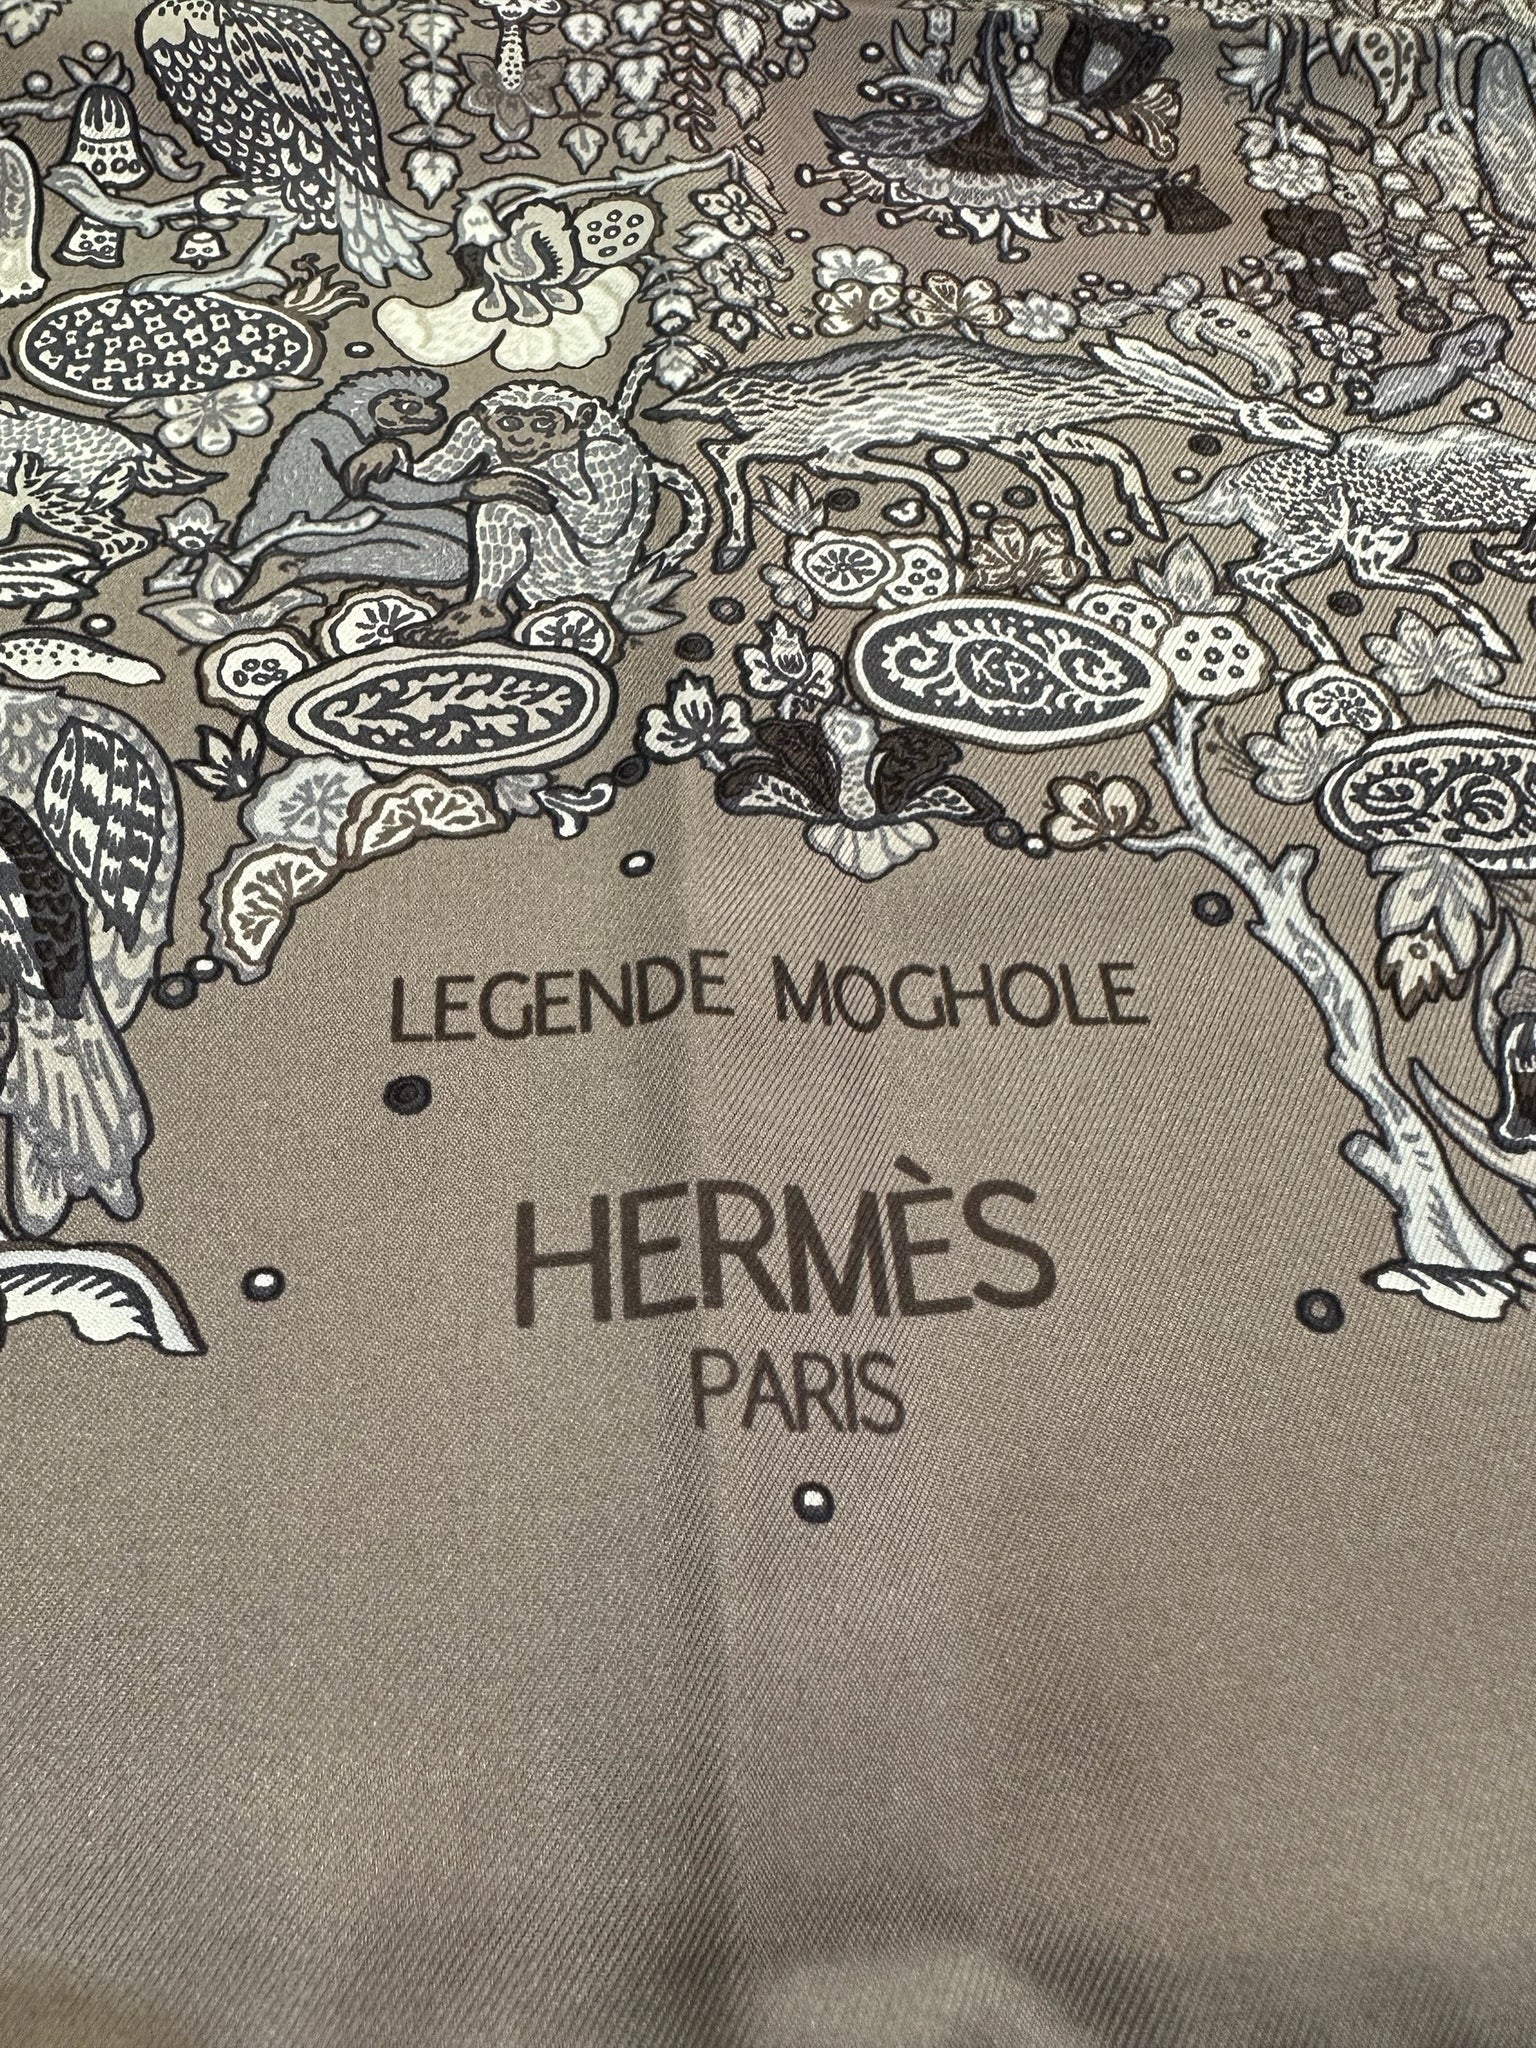 Hermes Scarf 2008 "Legende Moghole" (Mushal Legend) by Karen Petrossian  LABEL 3 of 4